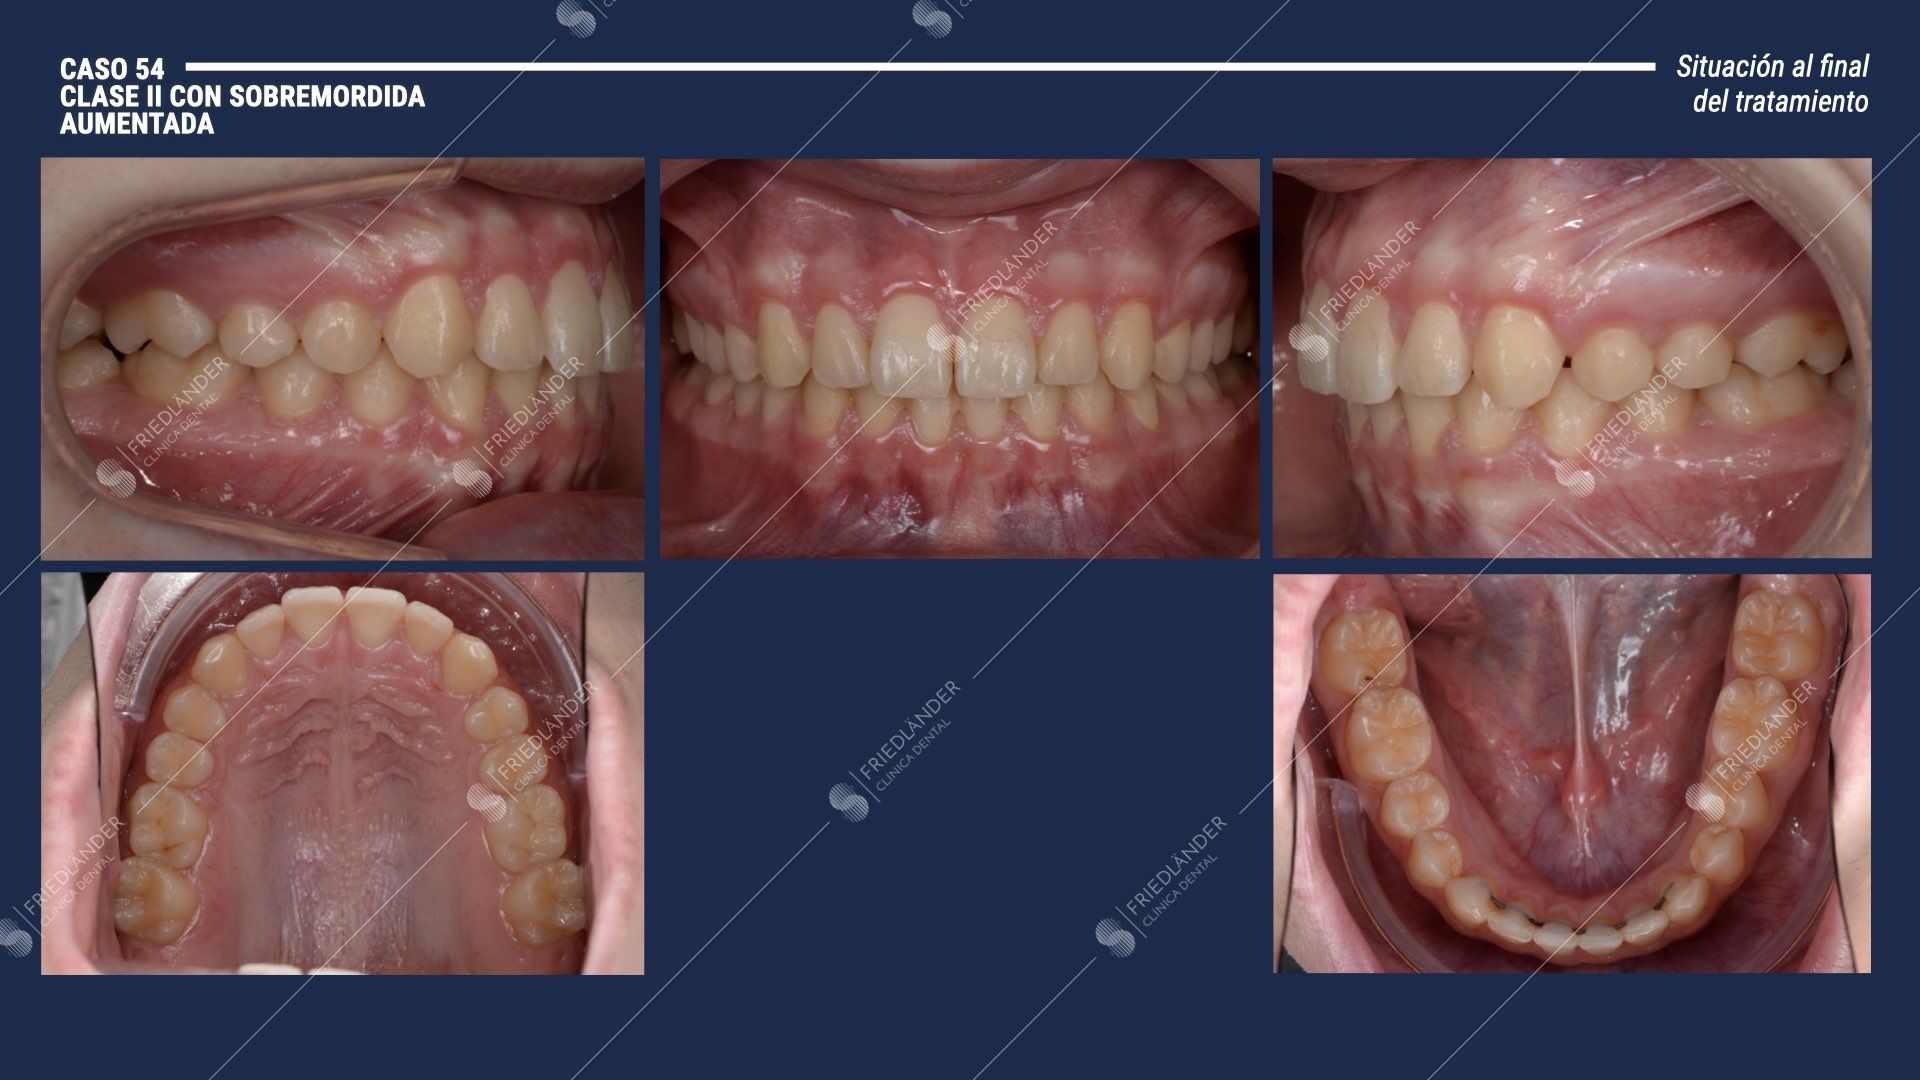 microtornillos de ortodoncia para tratar clase II